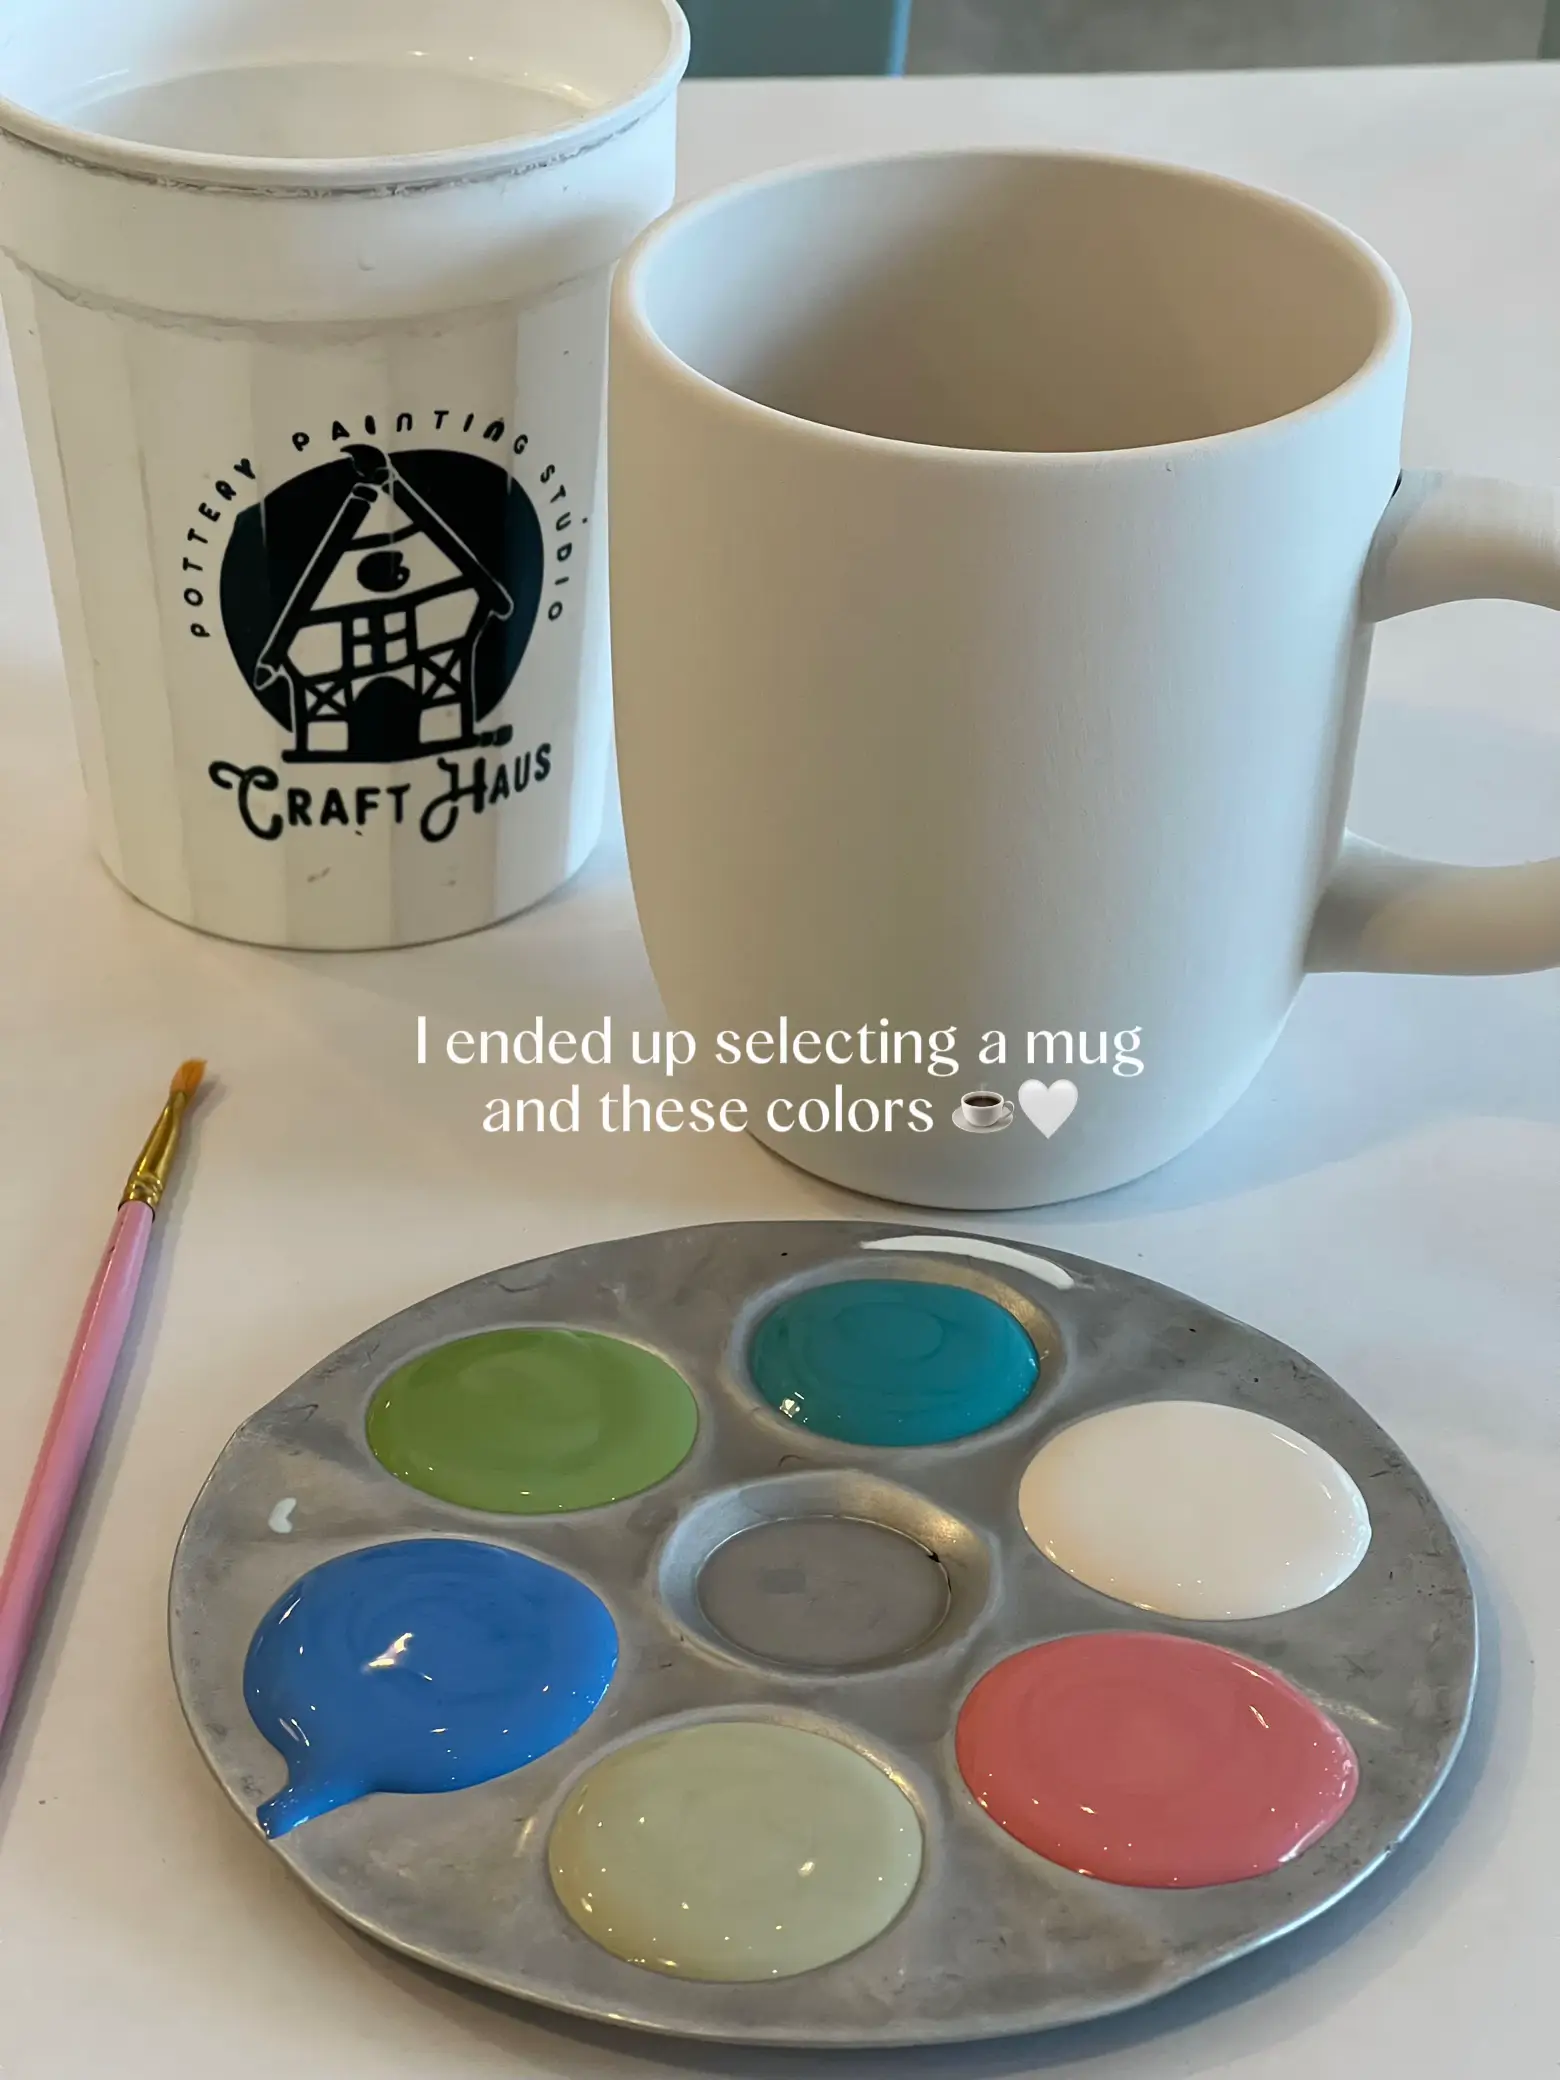 Pottery Mug Painting Kits - DIY Art in a Box - Gift mug - Great Gift Idea